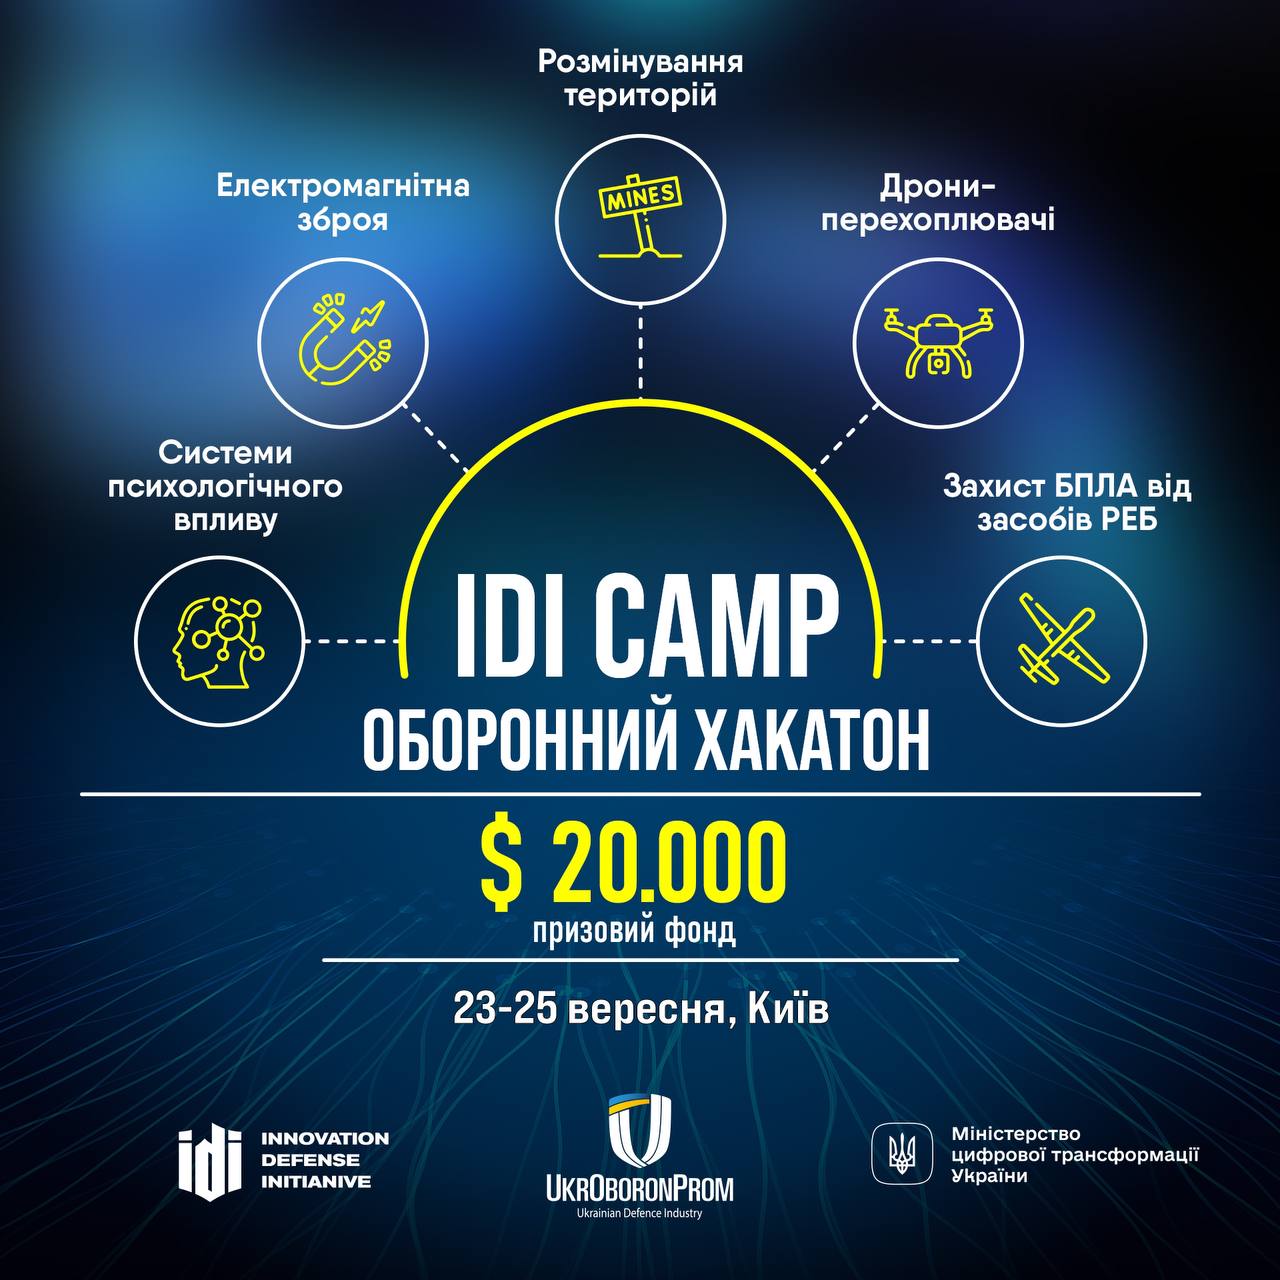 IDI Camp - Оборонний хакатон (в партнерстві з Укроборонпромом та Мінцифрою)